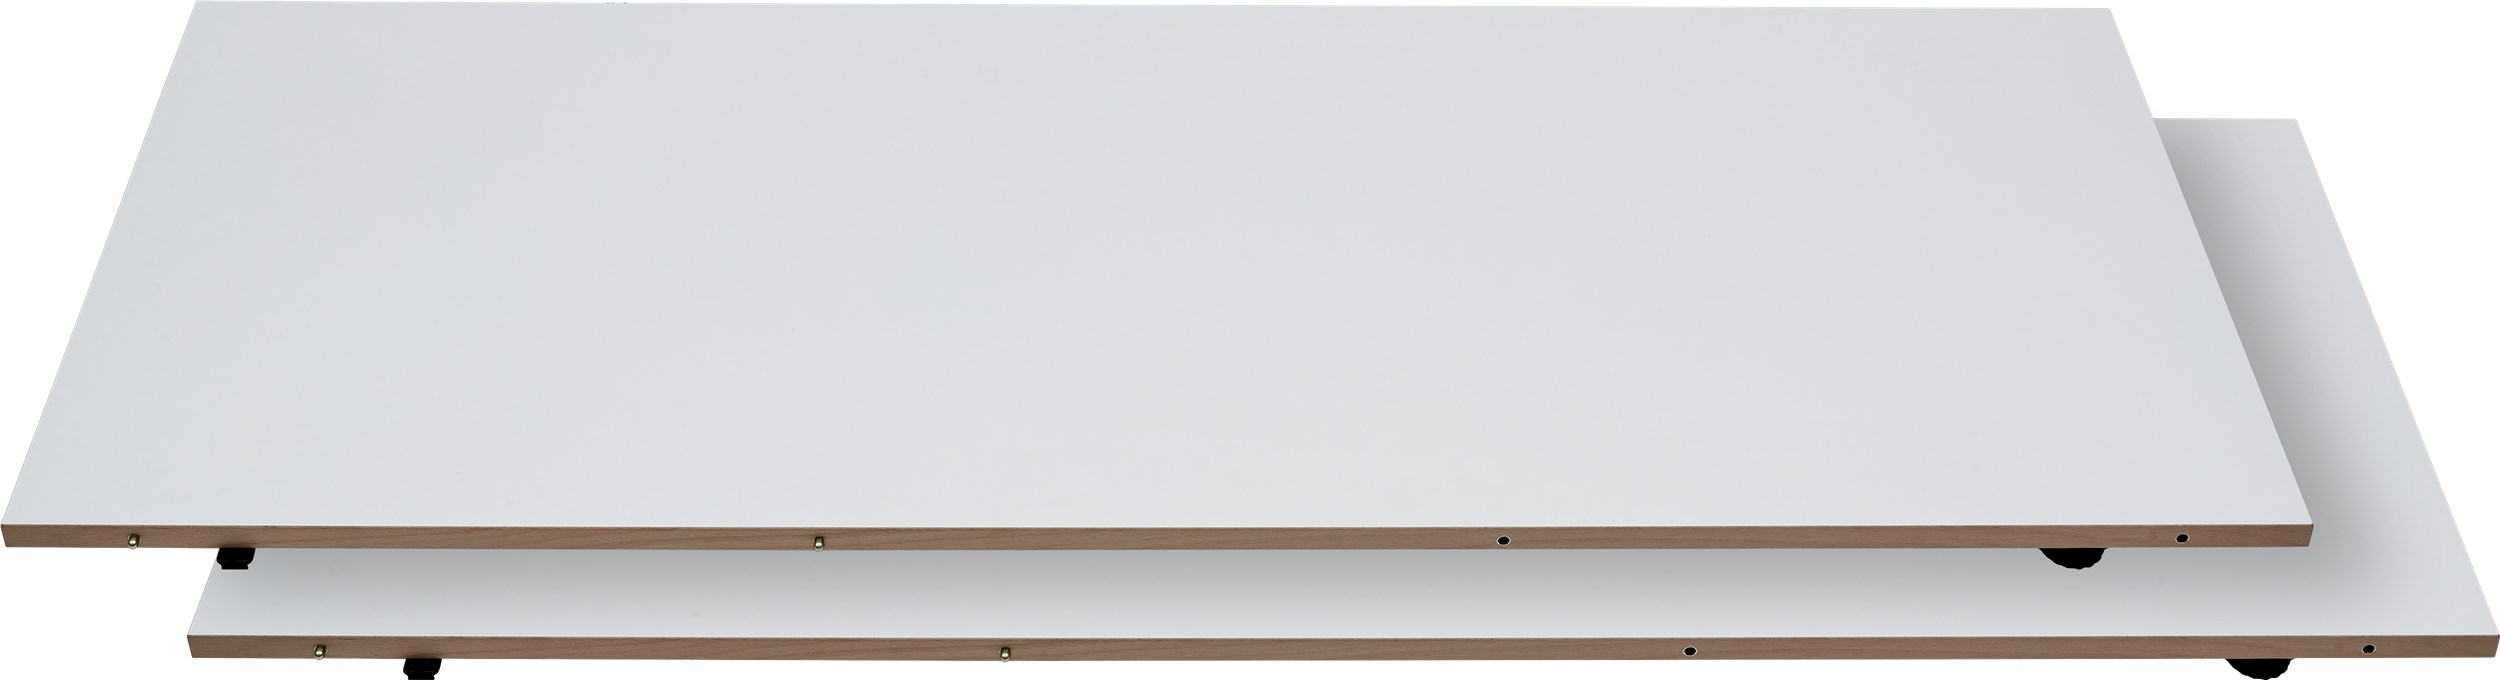 Besalu Iläggsplatta 49 x 130 cm - Vit melamin, kant i vitpigmenterad lackerad ek och 2 st